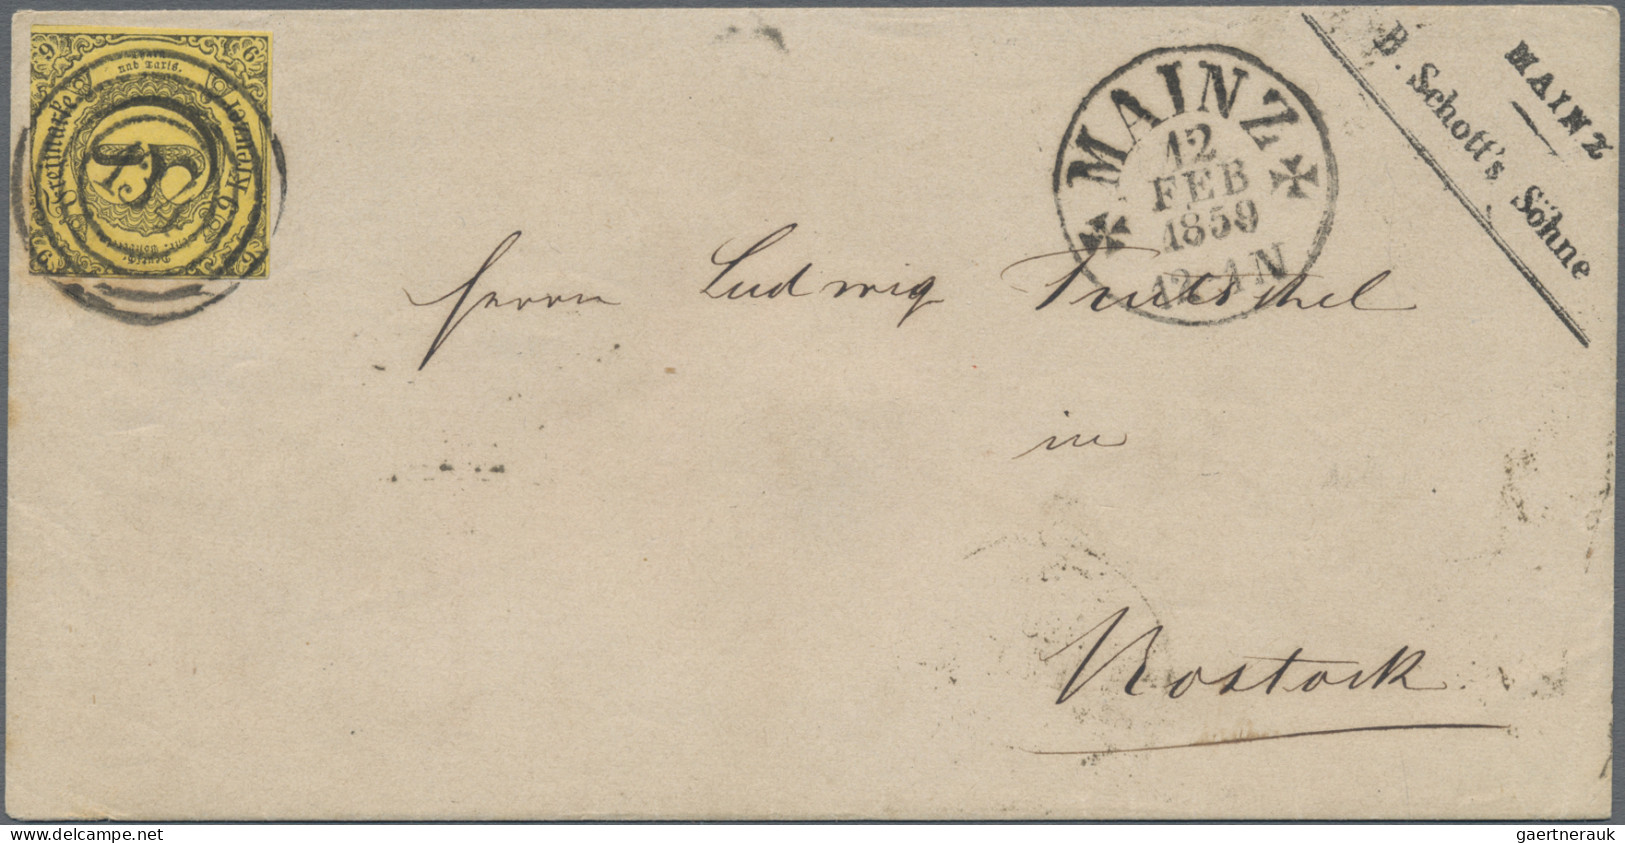 Thurn & Taxis - Marken und Briefe: 1817/65 (ca.), interessante Kollektion von Vo